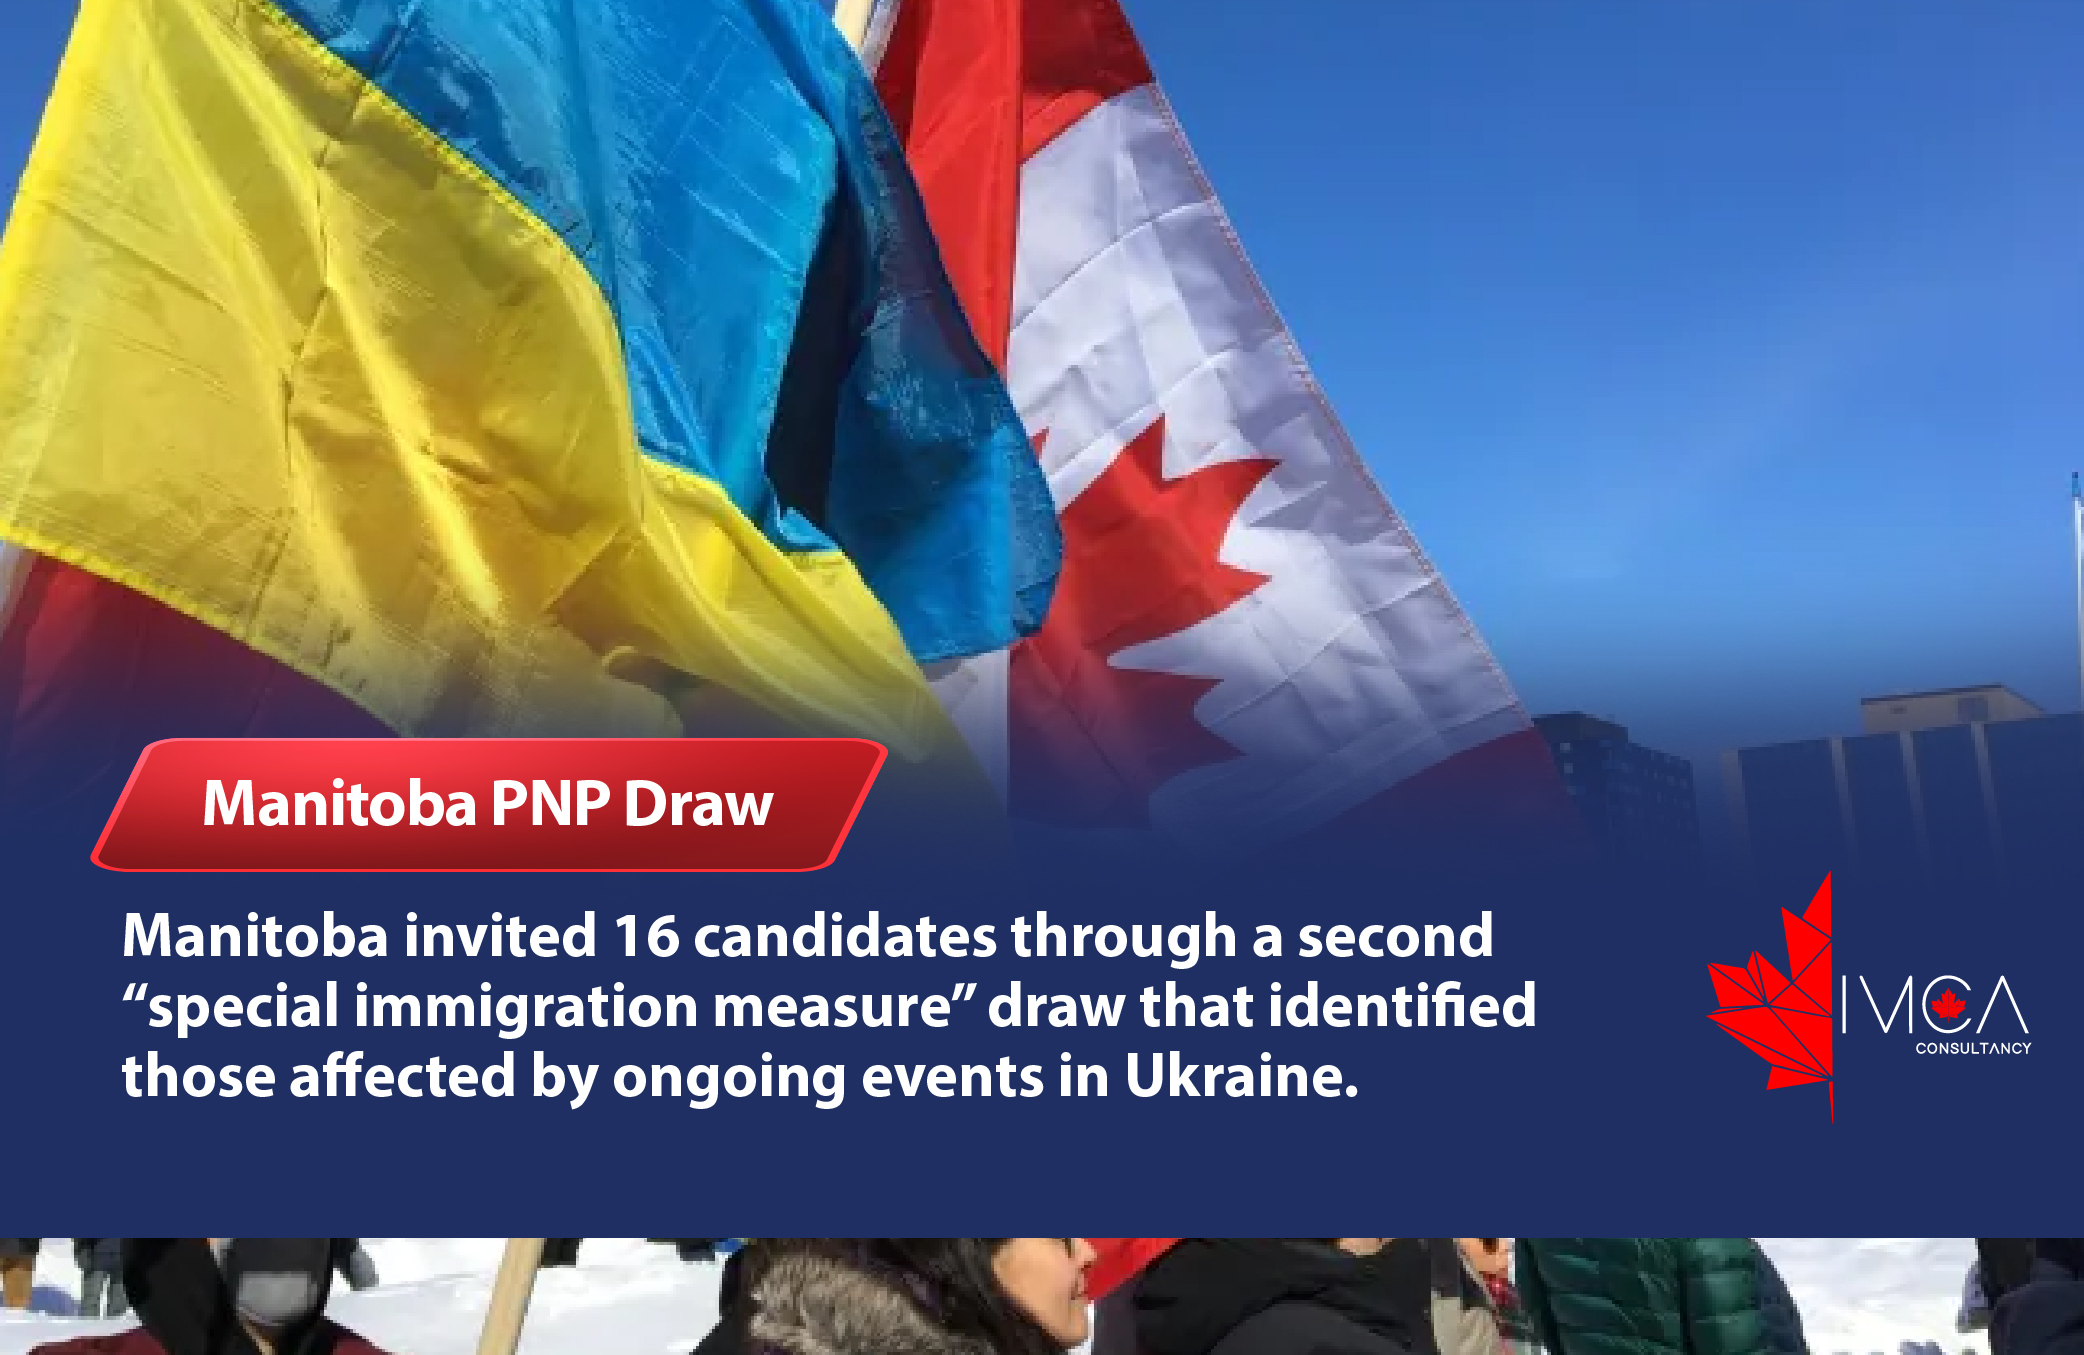 Manitoba PNP Draw IMCA Consultancy